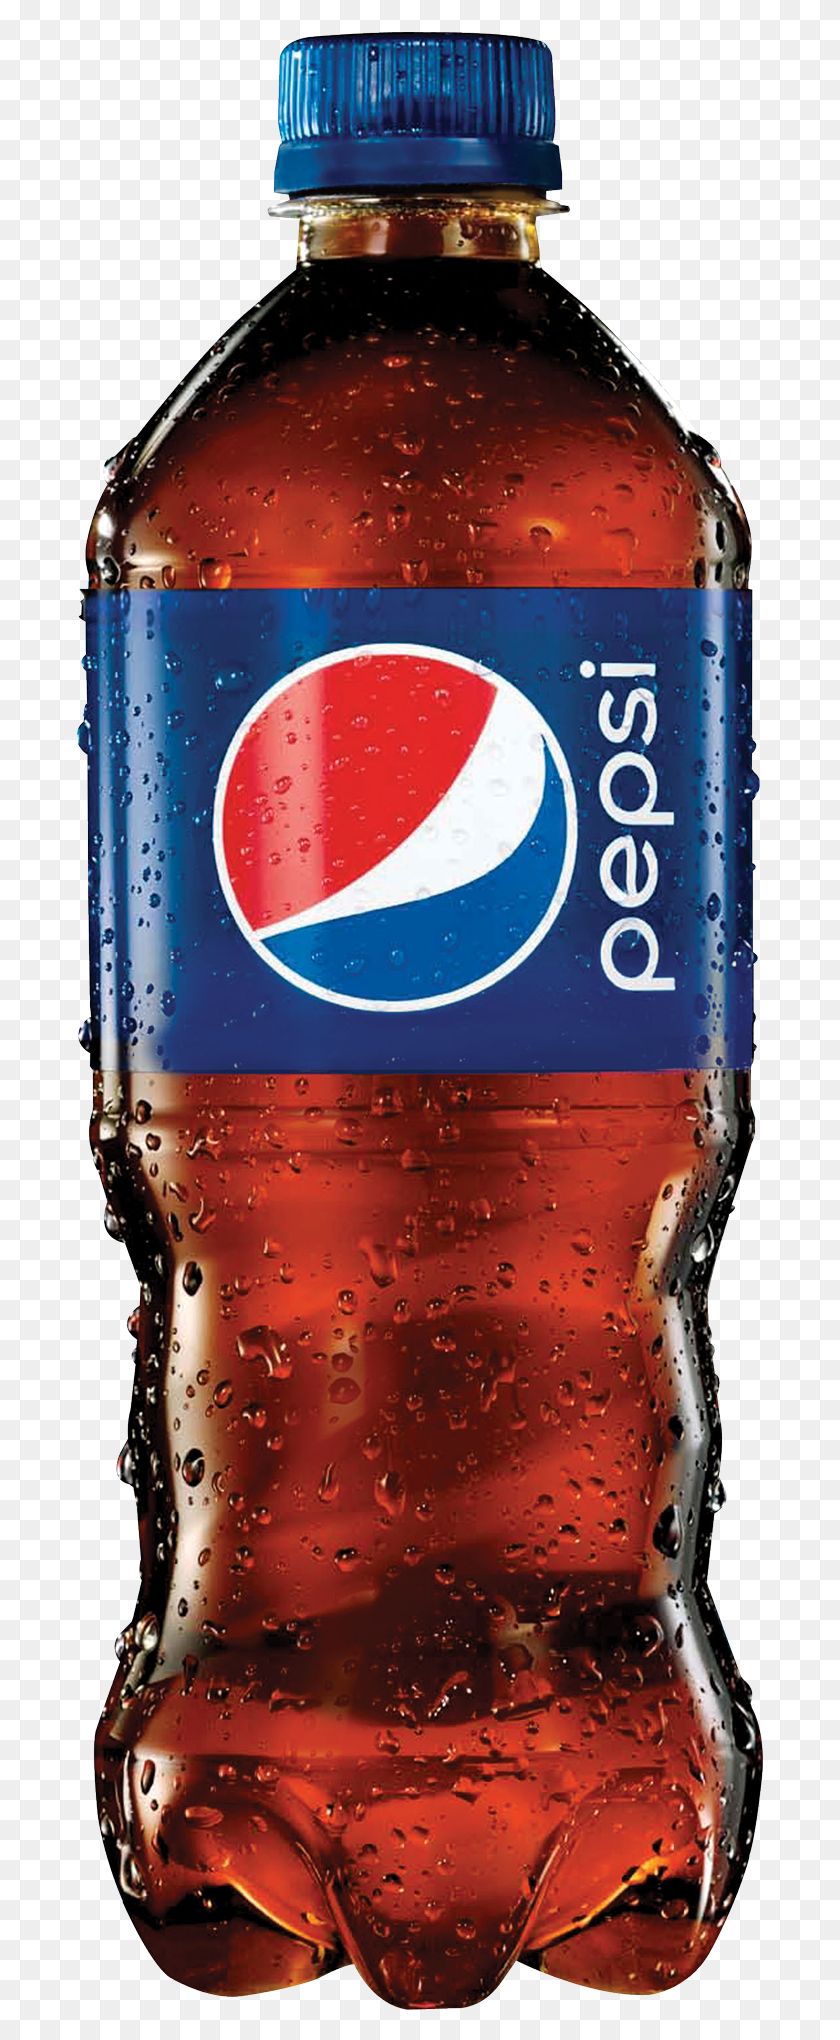 689x1980 Pepsi Image Pepsi Bottle 2017, Газировка, Напиток, Напиток Png Скачать